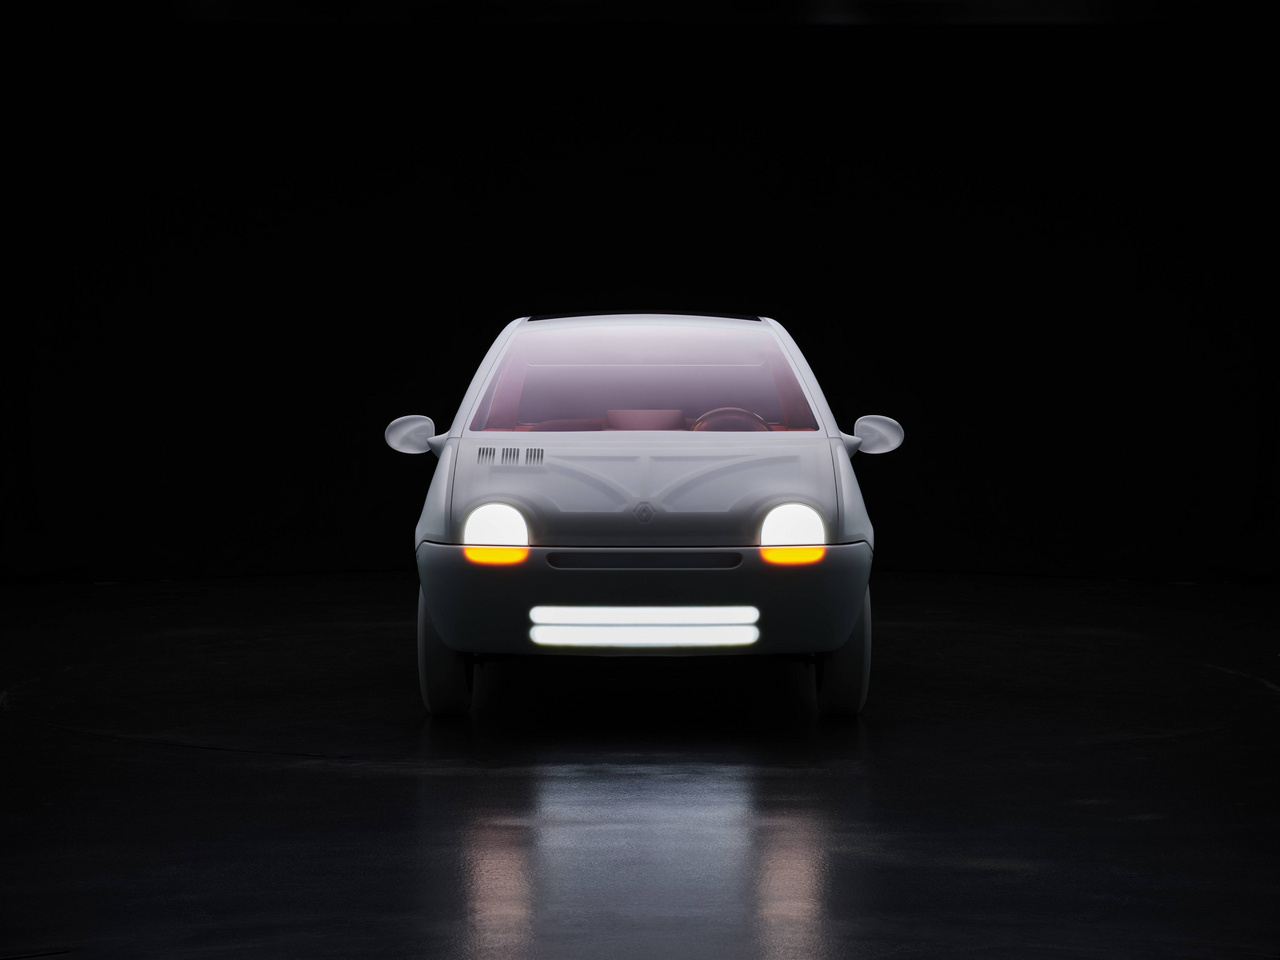 1993-ban jött ki a korszakalkotó Renault Twingo, a városi kisautó, ami miatt a Twitteren minden kedden nyomjuk a Twingo Tuesdayt, a nemzetközi Twingo rajongás egyik megnyilvánulását.